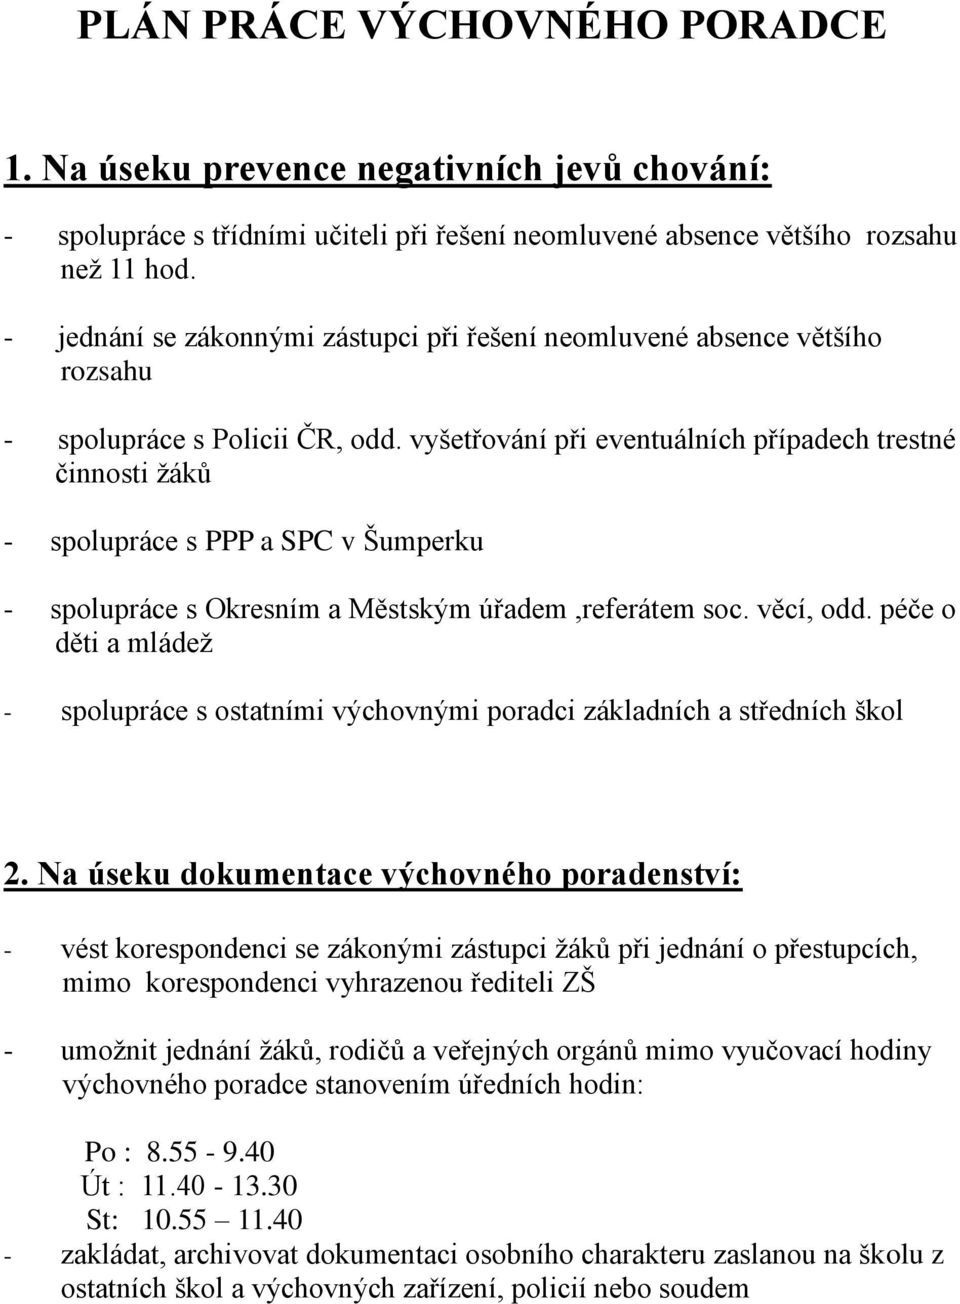 vyšetřování při eventuálních případech trestné činnosti žáků - spolupráce s PPP a SPC v Šumperku - spolupráce s Okresním a Městským úřadem,referátem soc. věcí, odd.